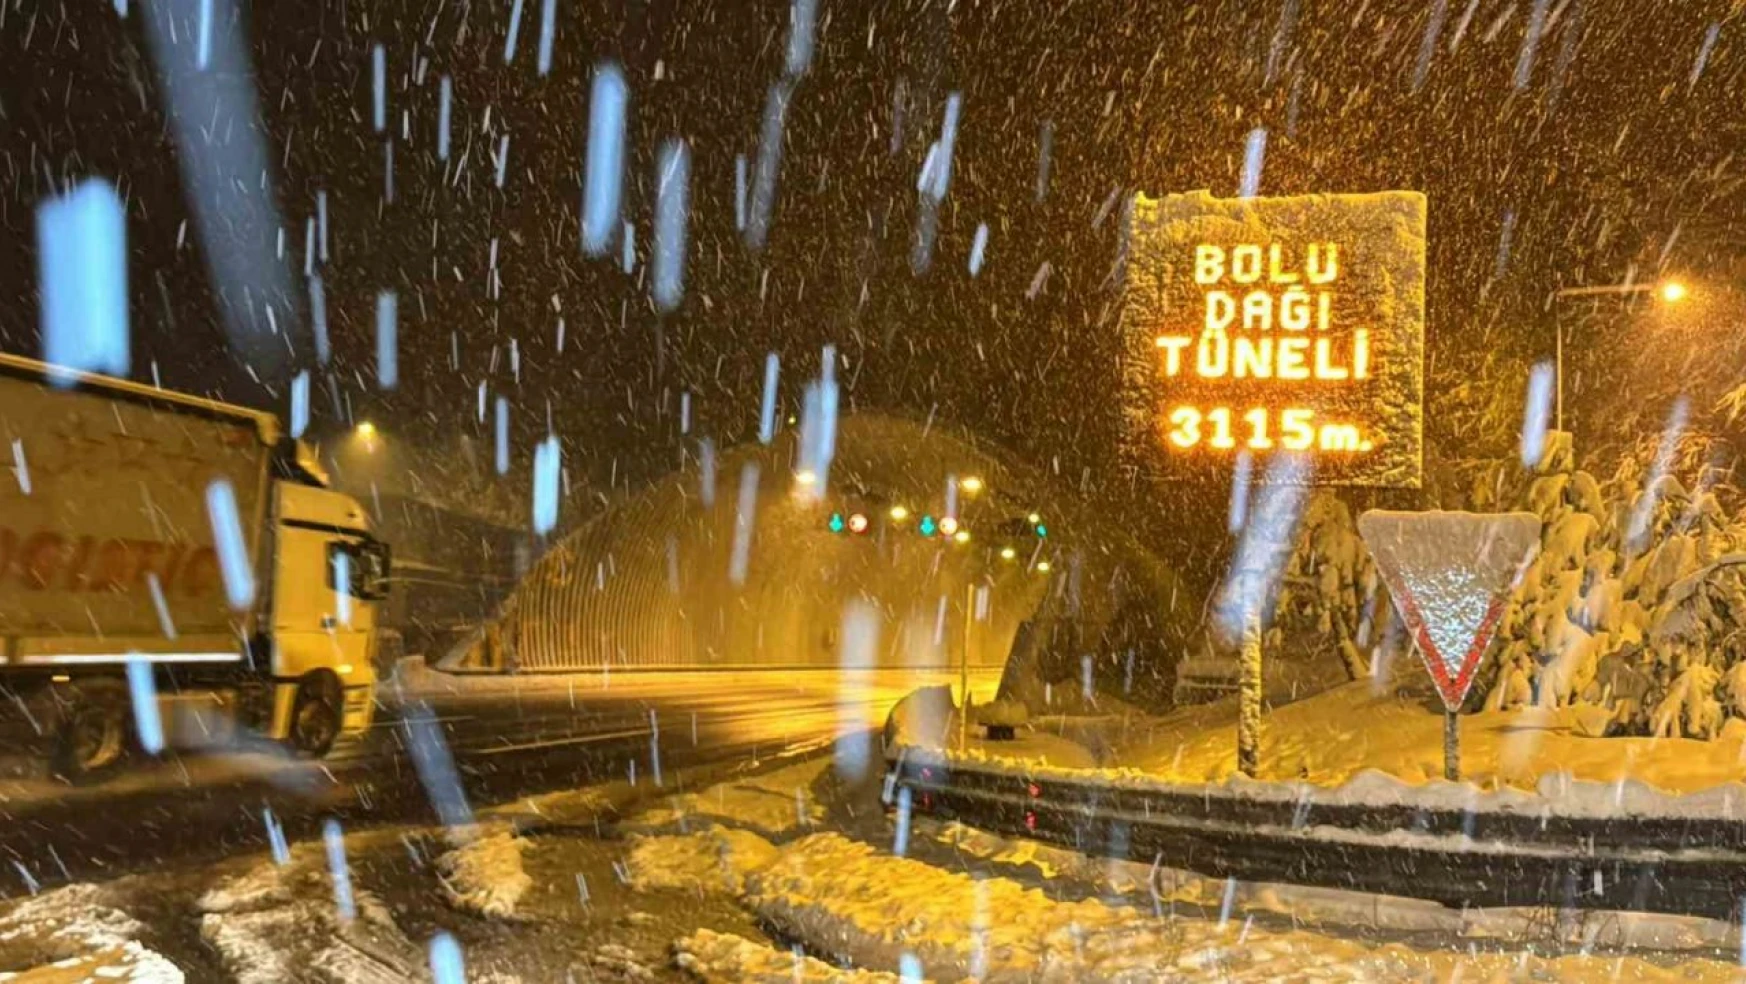 Bolu Dağı'nda Yoğun Kar Yağışı: Görüş Mesafesi 40 Metreye Düştü